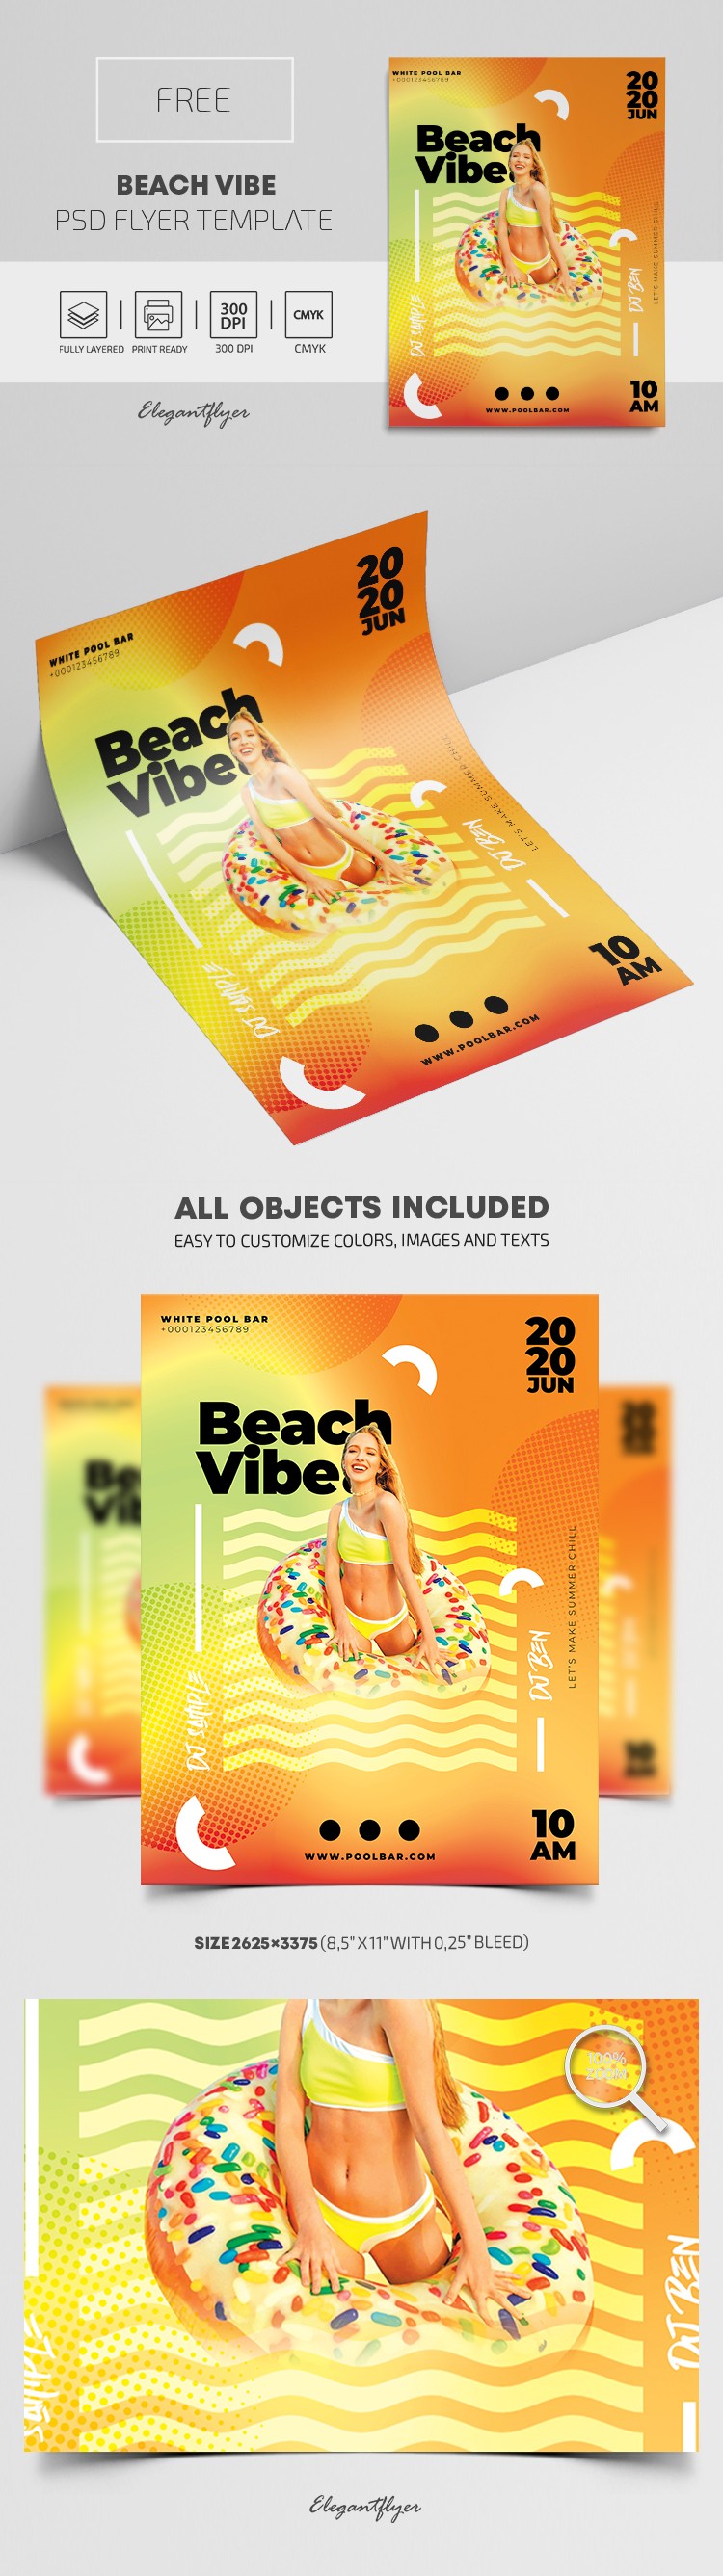 Beach Vibe Flyer by ElegantFlyer